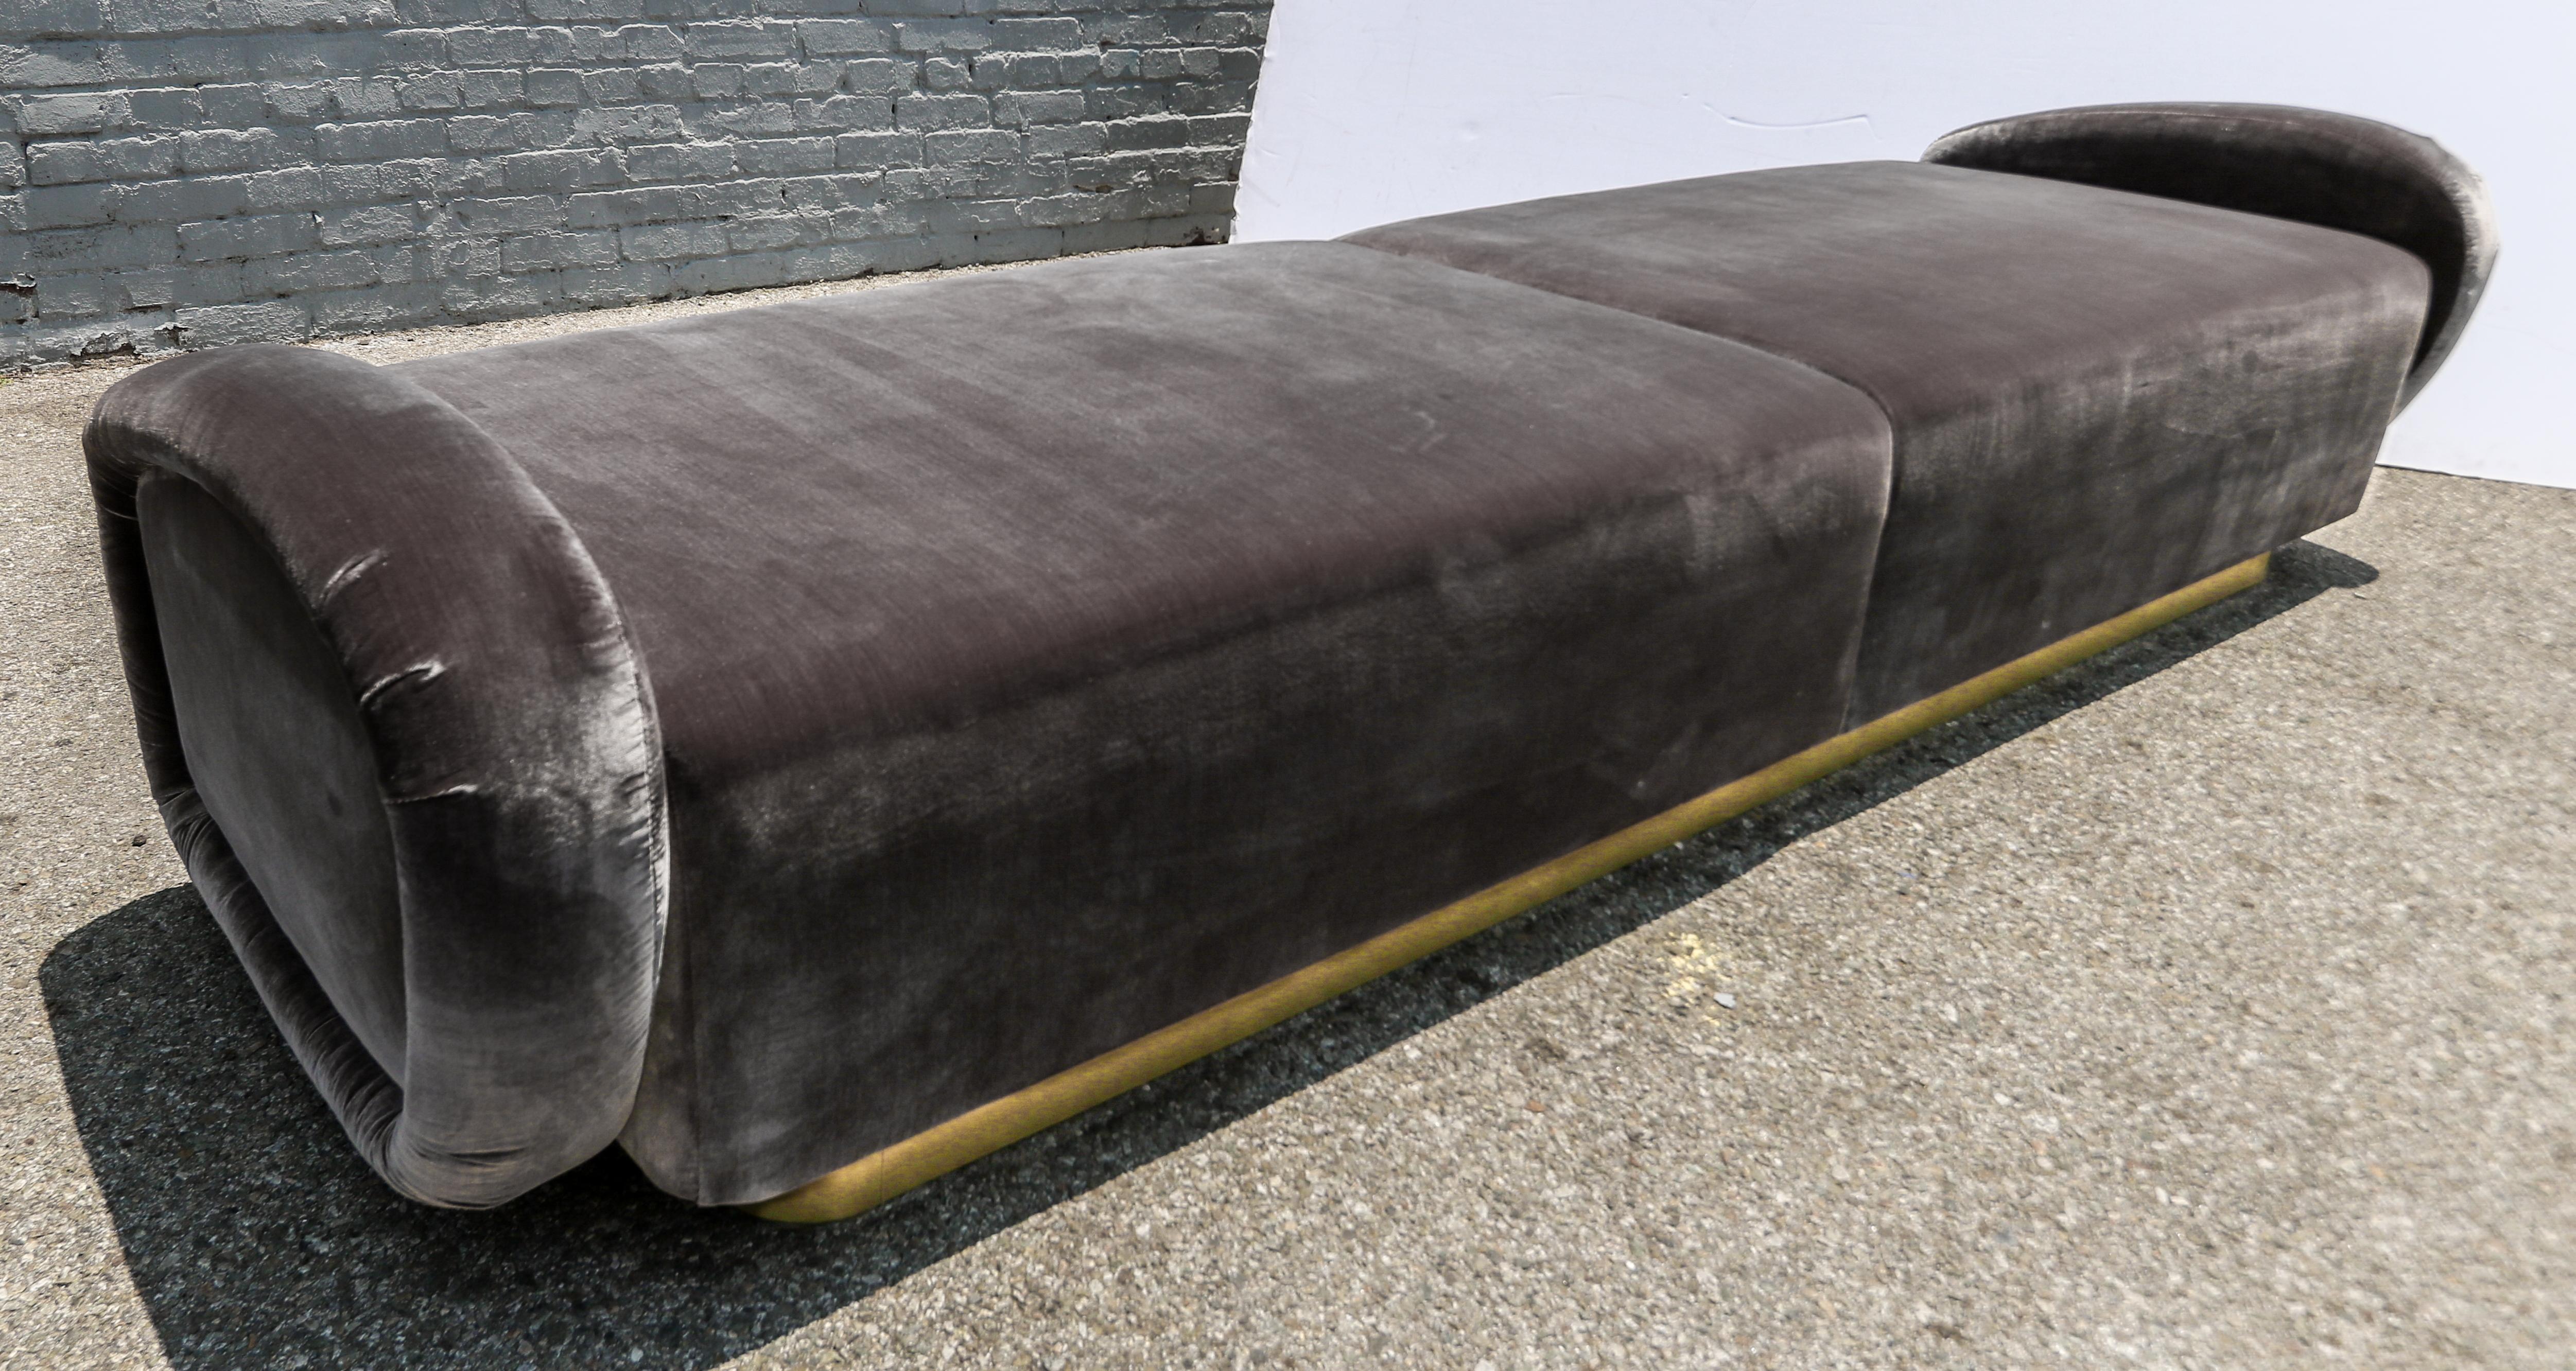 Maßgefertigtes Sofa oder Bank im italienischen Stil der 1960er Jahre mit handgefertigtem Messinggestell, gepolstert mit grauem Seidensamt.  Hergestellt in Los Angeles von Adesso Imports. Kann in verschiedenen Größen, Stoffen und Farben hergestellt